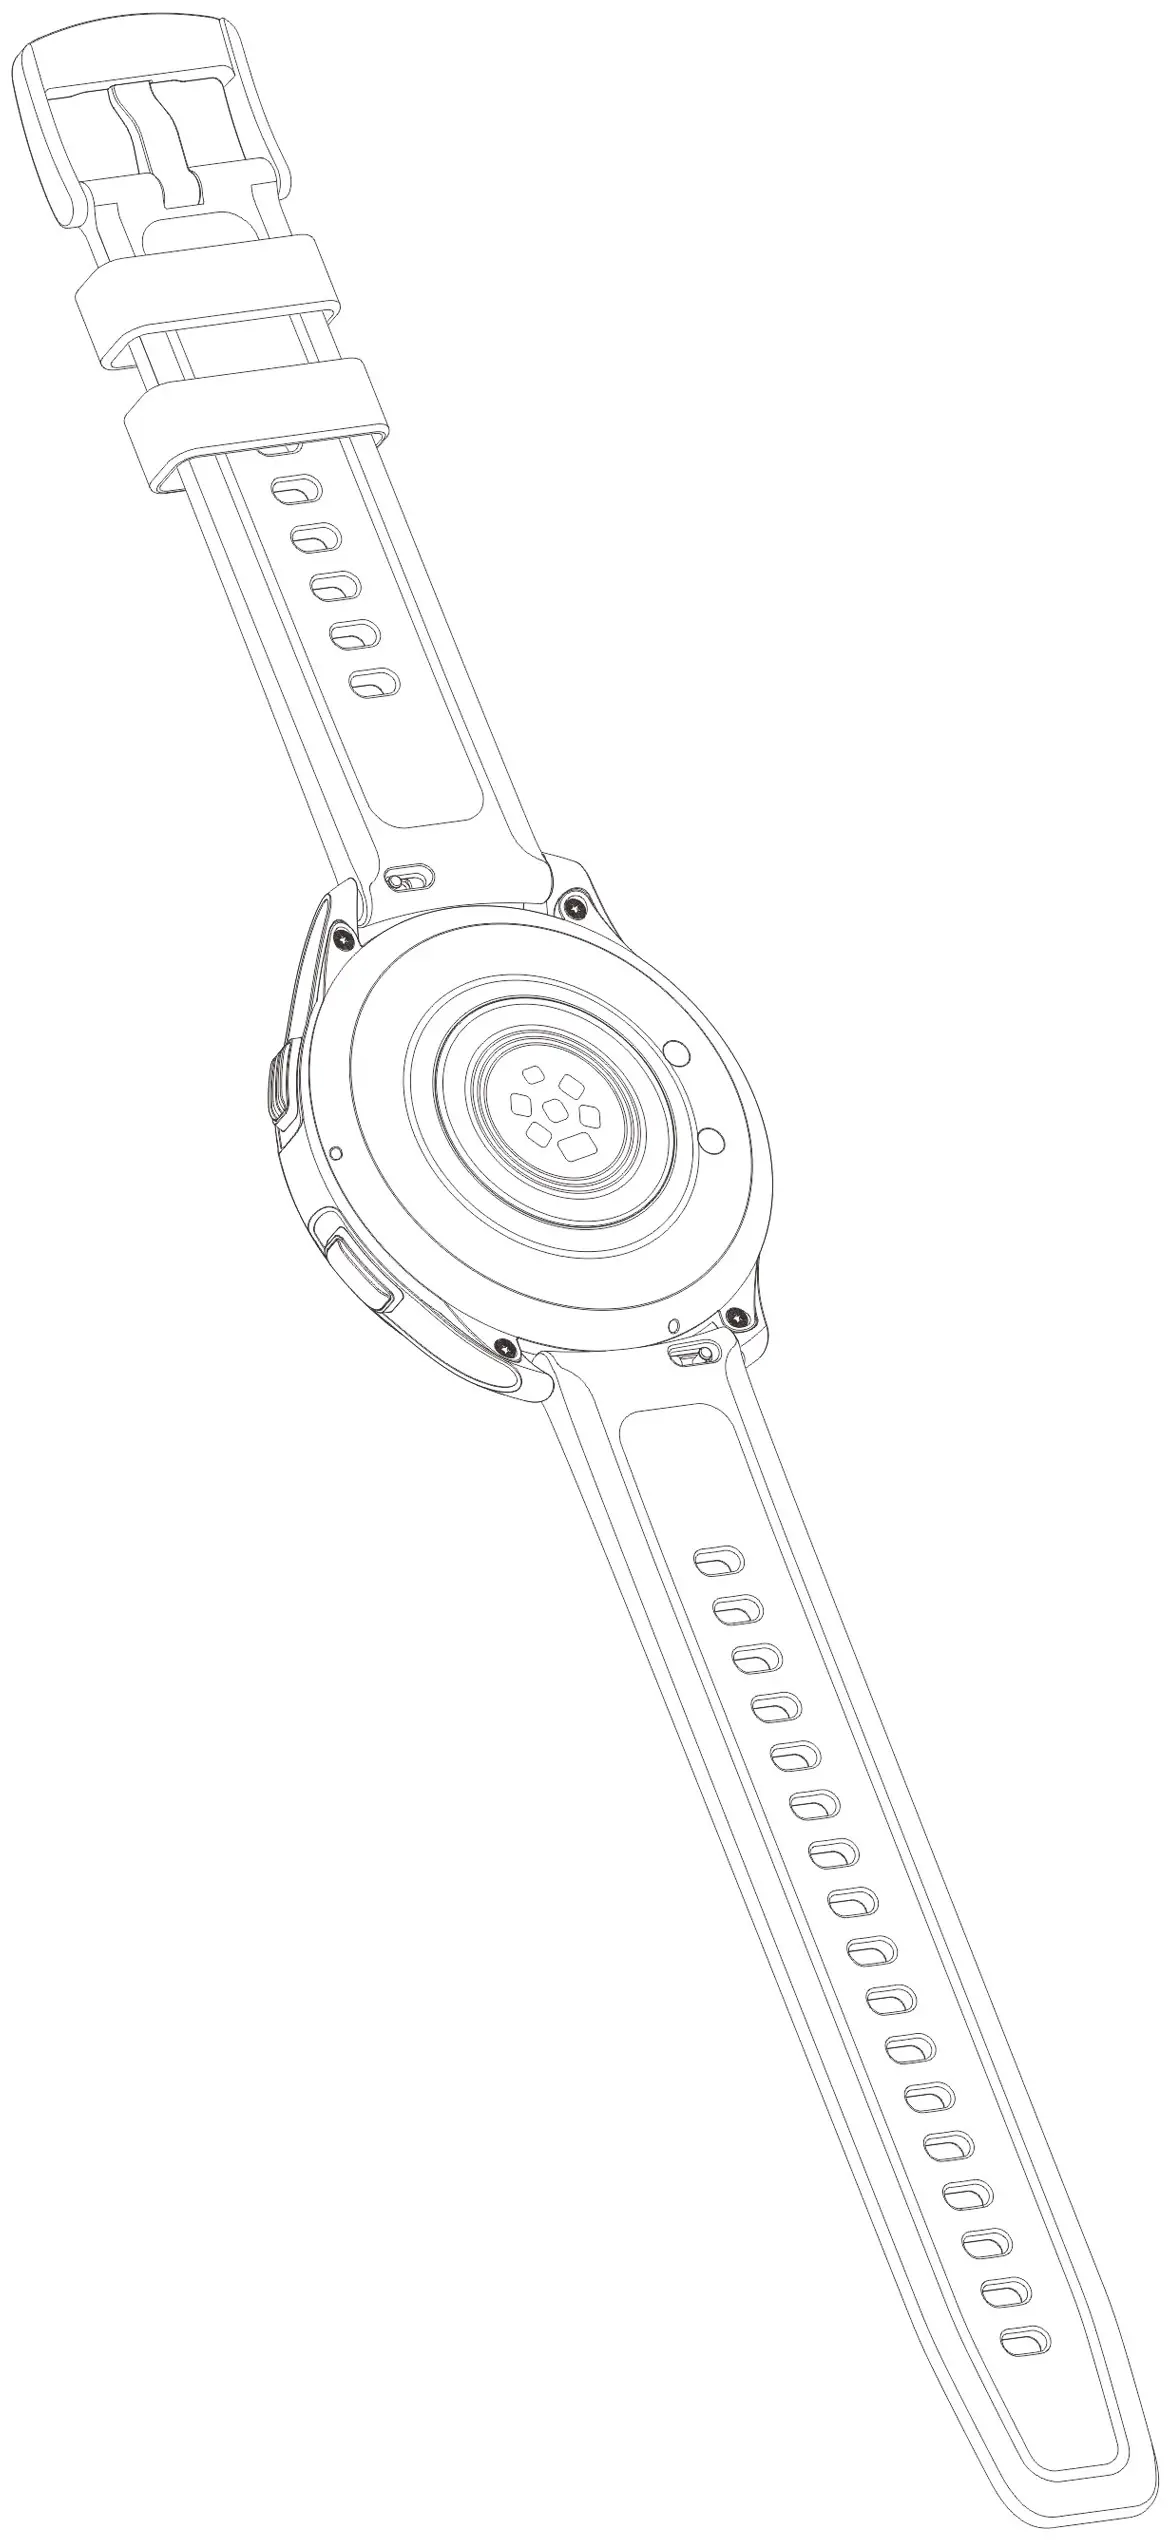 smartwatch vivo brevetto